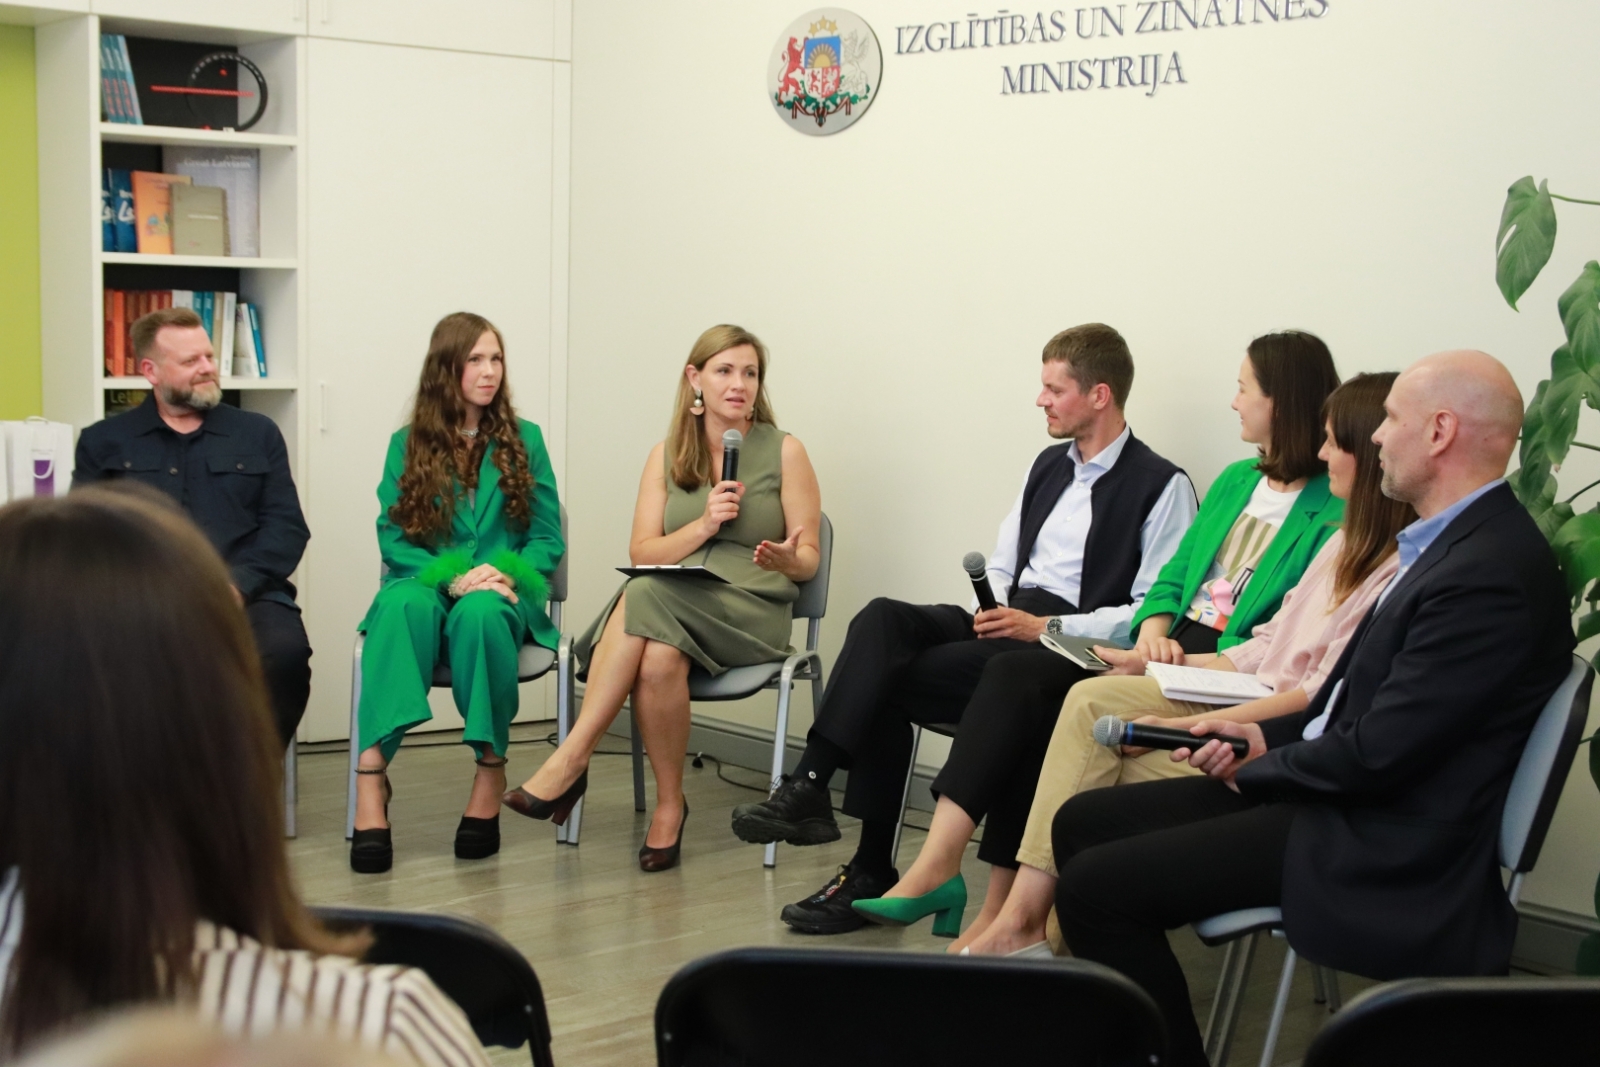 Pētījuma “Neformālās izglītības piedāvājums darba ar jaunatni jomā Latvijā” prezentācija un diskusija